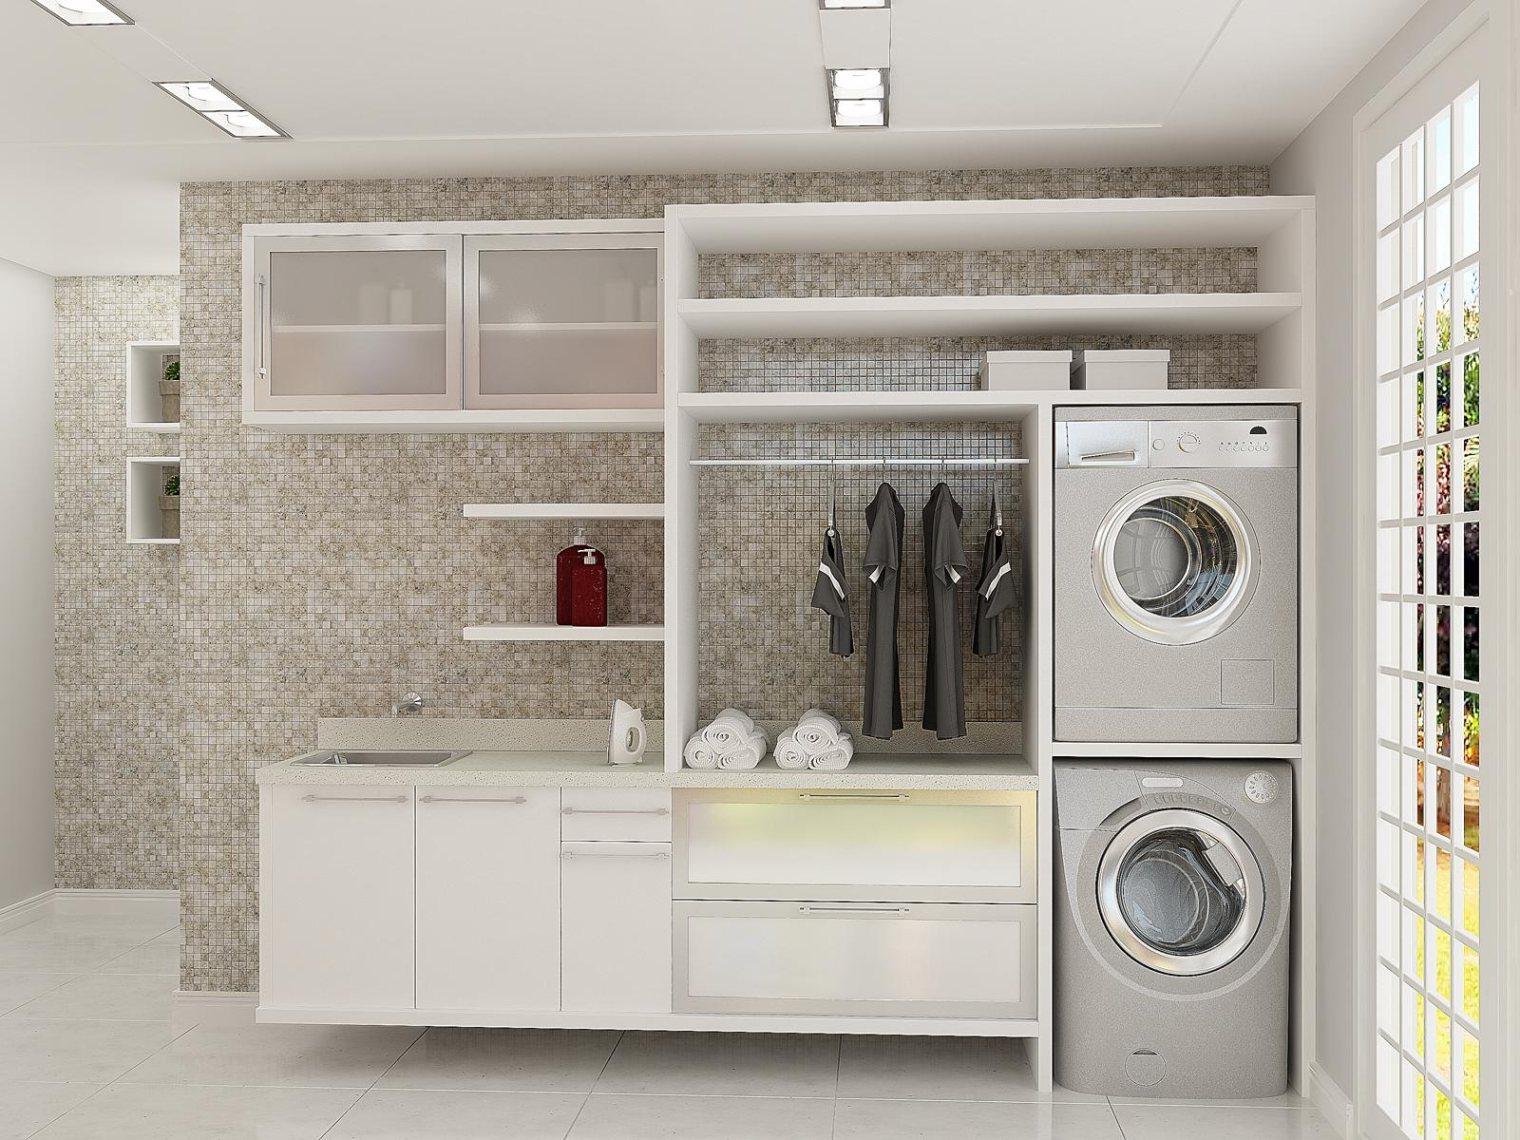 Hình ảnh toàn cảnh phòng giặt tiện nghi với tủ kệ lưu trữ màu trắng, thanh kim loại treo đồ